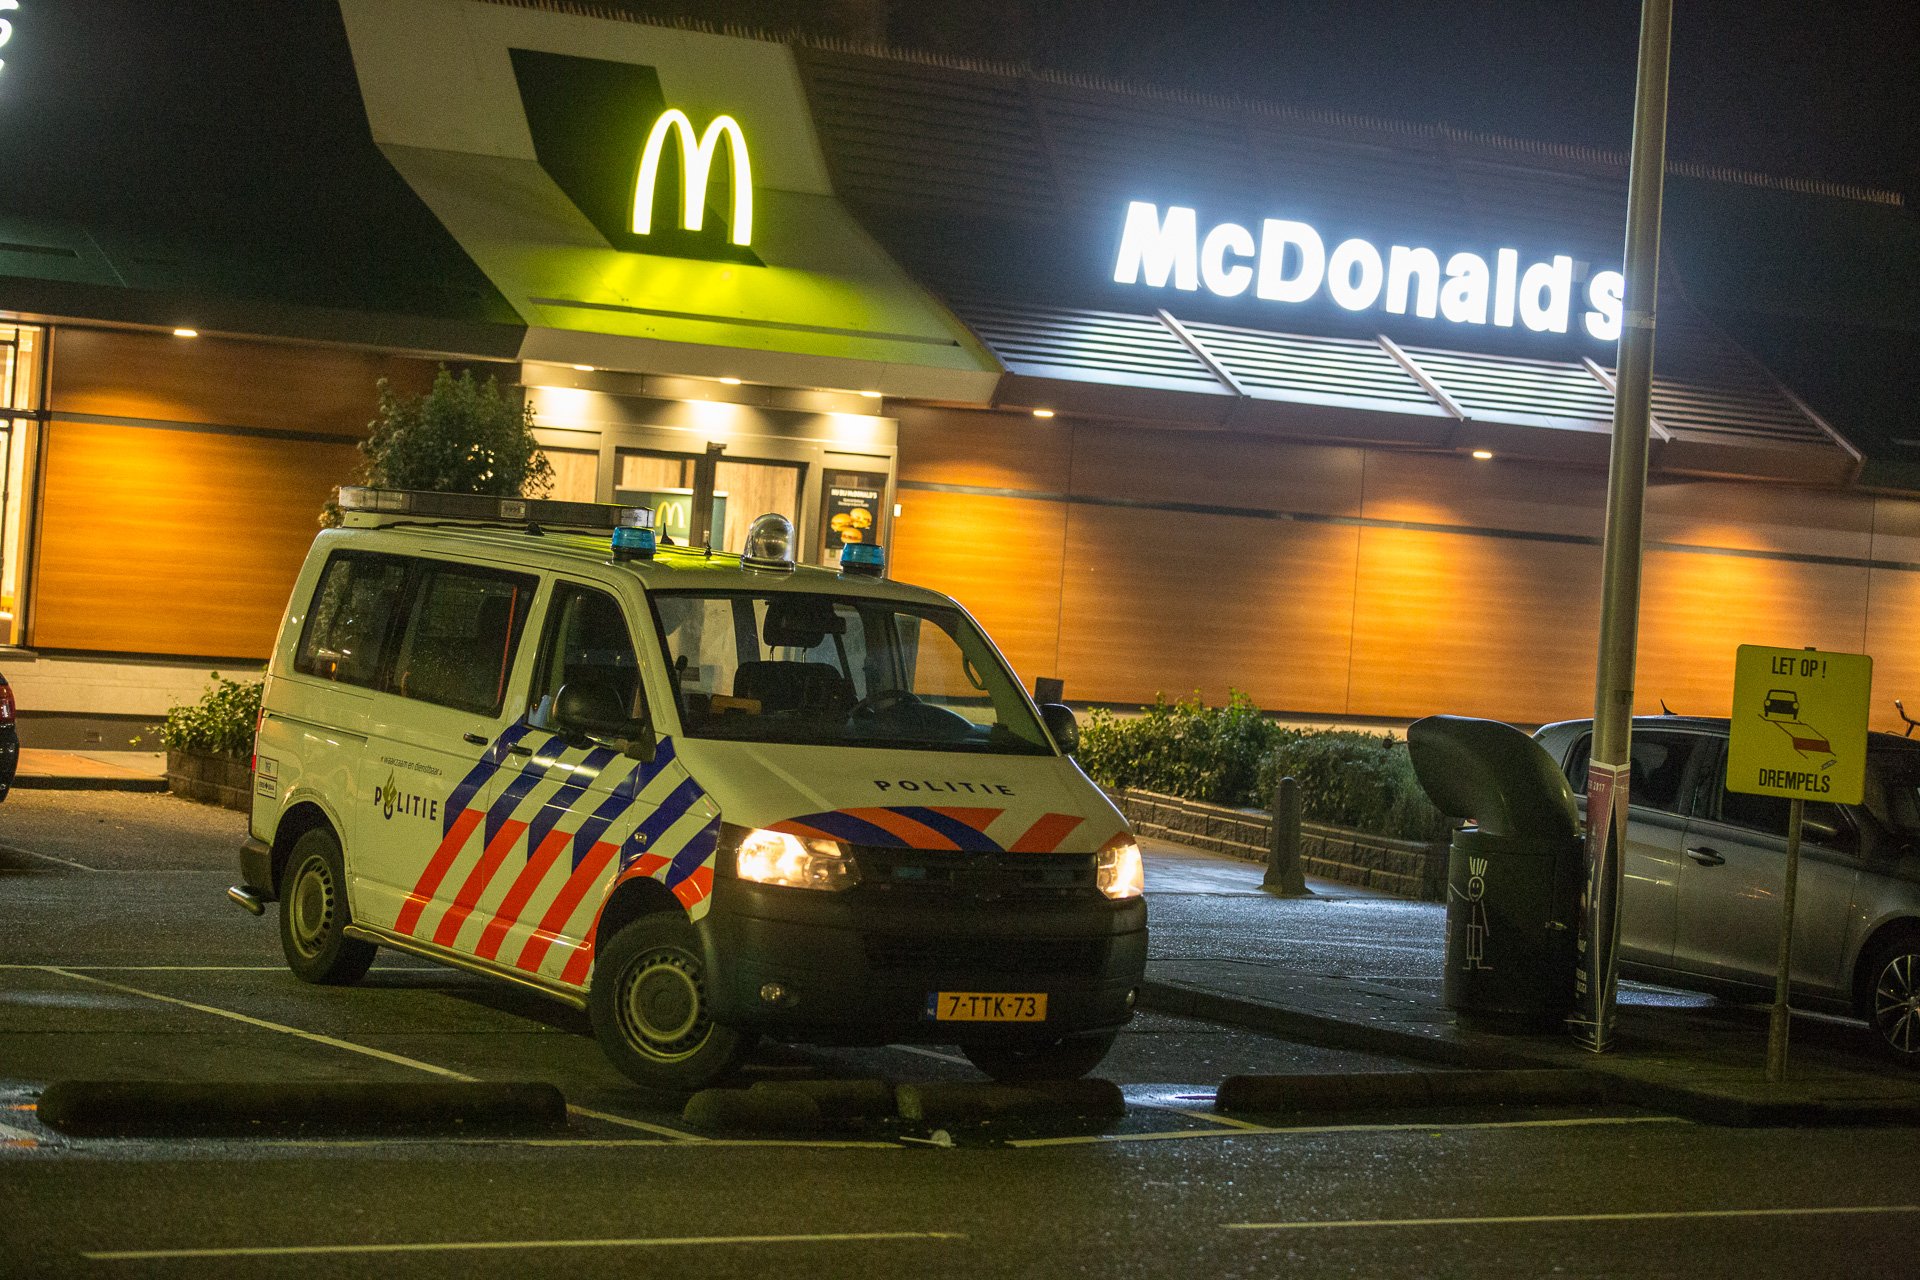 Overvallen op tankstation en McDonald's in Roosendaal